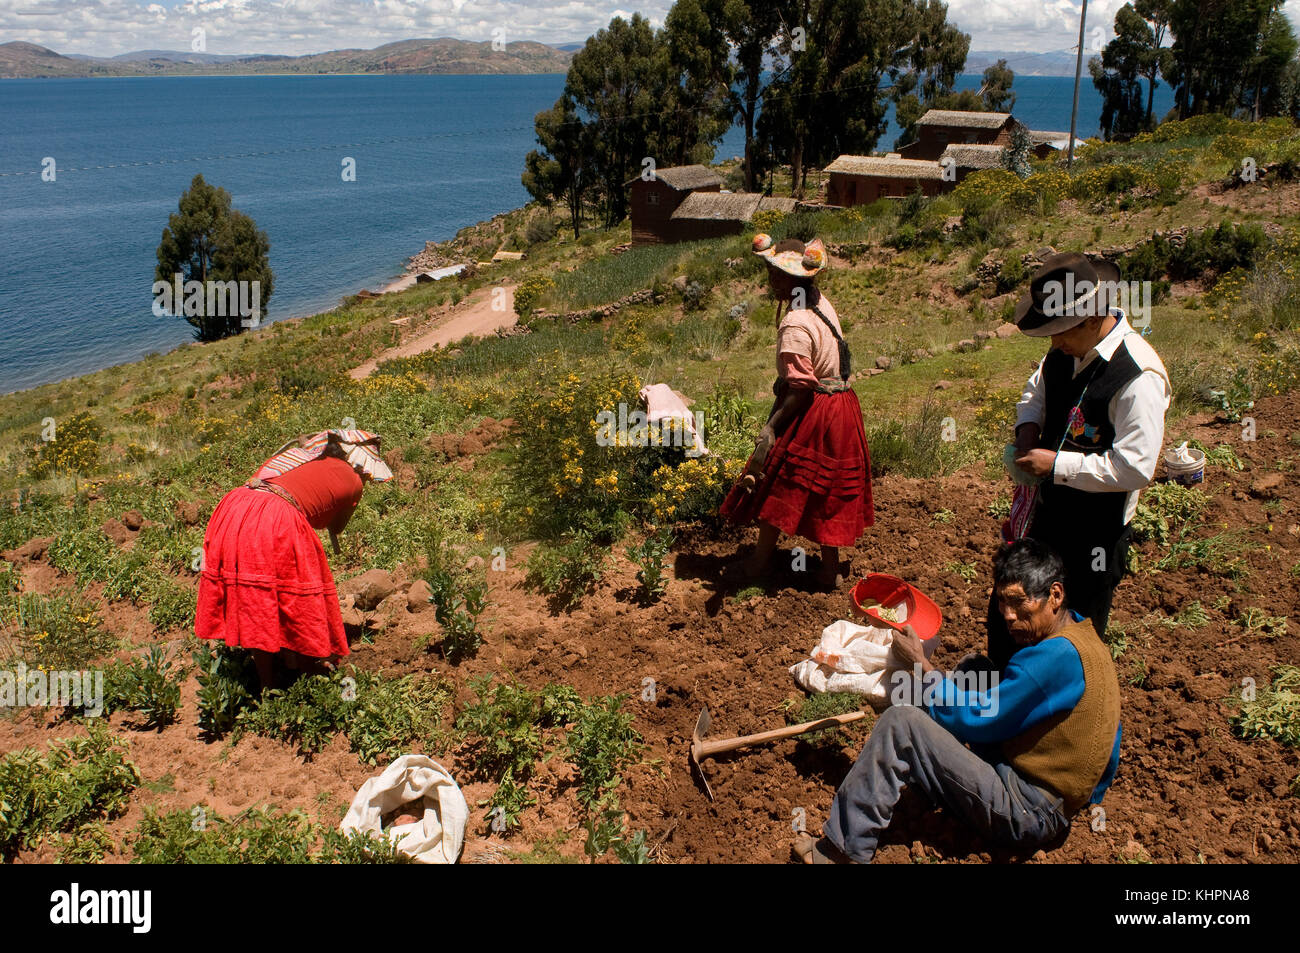 Plusieurs paysans du village de llachón planter des pommes de terre sur la rive du lac Titicaca. île amantani, lac Titicaca, Puno, Pérou Banque D'Images